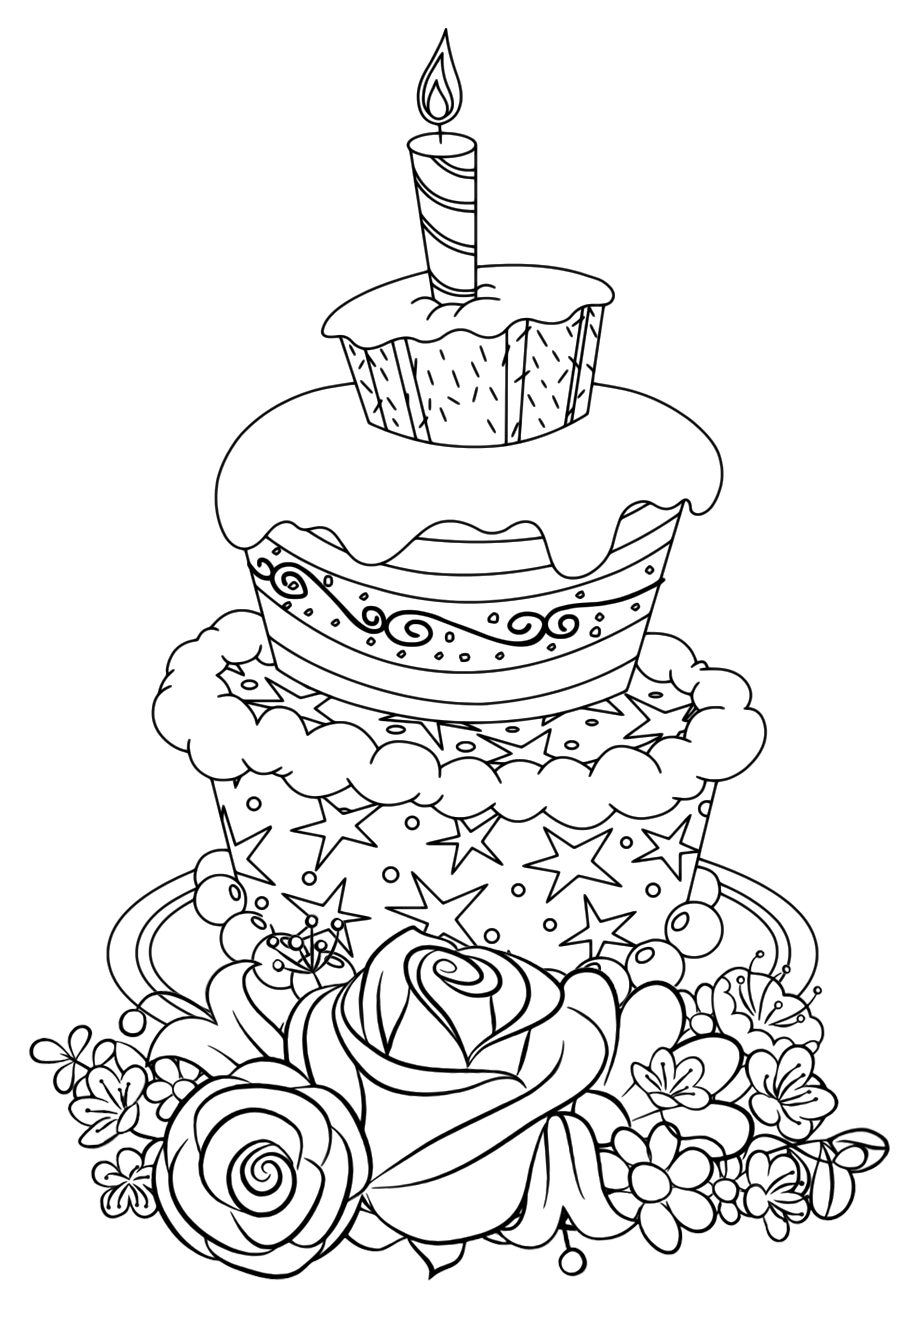 Раскраска для девочек «Милашки» Торт для детей, чтобы распечатать